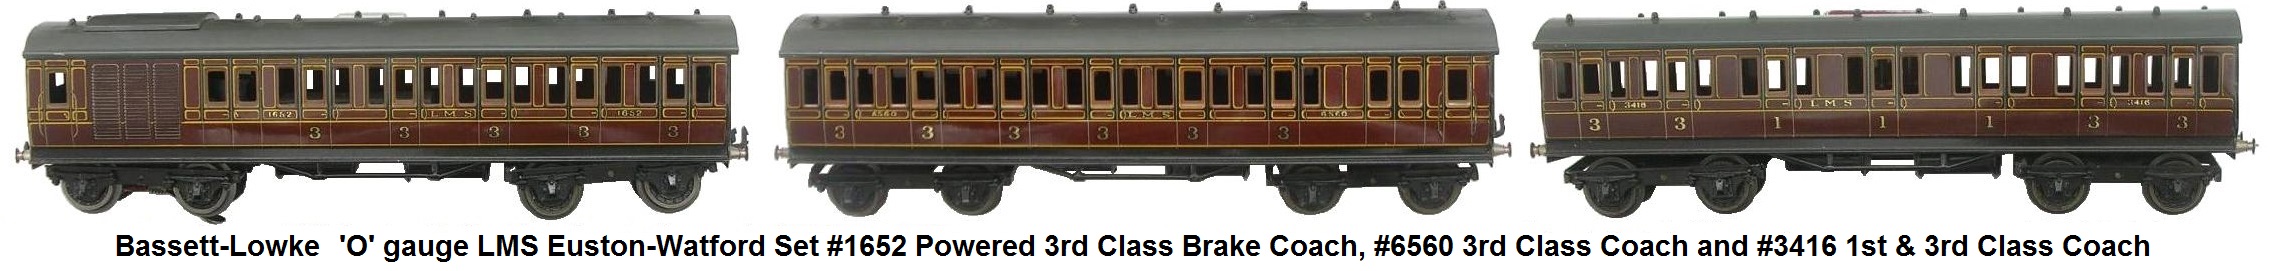 Bassett-Lowke 'O' gauge 12 Volt DC electric LMS Euston-Watford Set powered 3rd class brake coach #1652, 3rd class coach 12 #6560, and 1st and 3rd class coach #3416